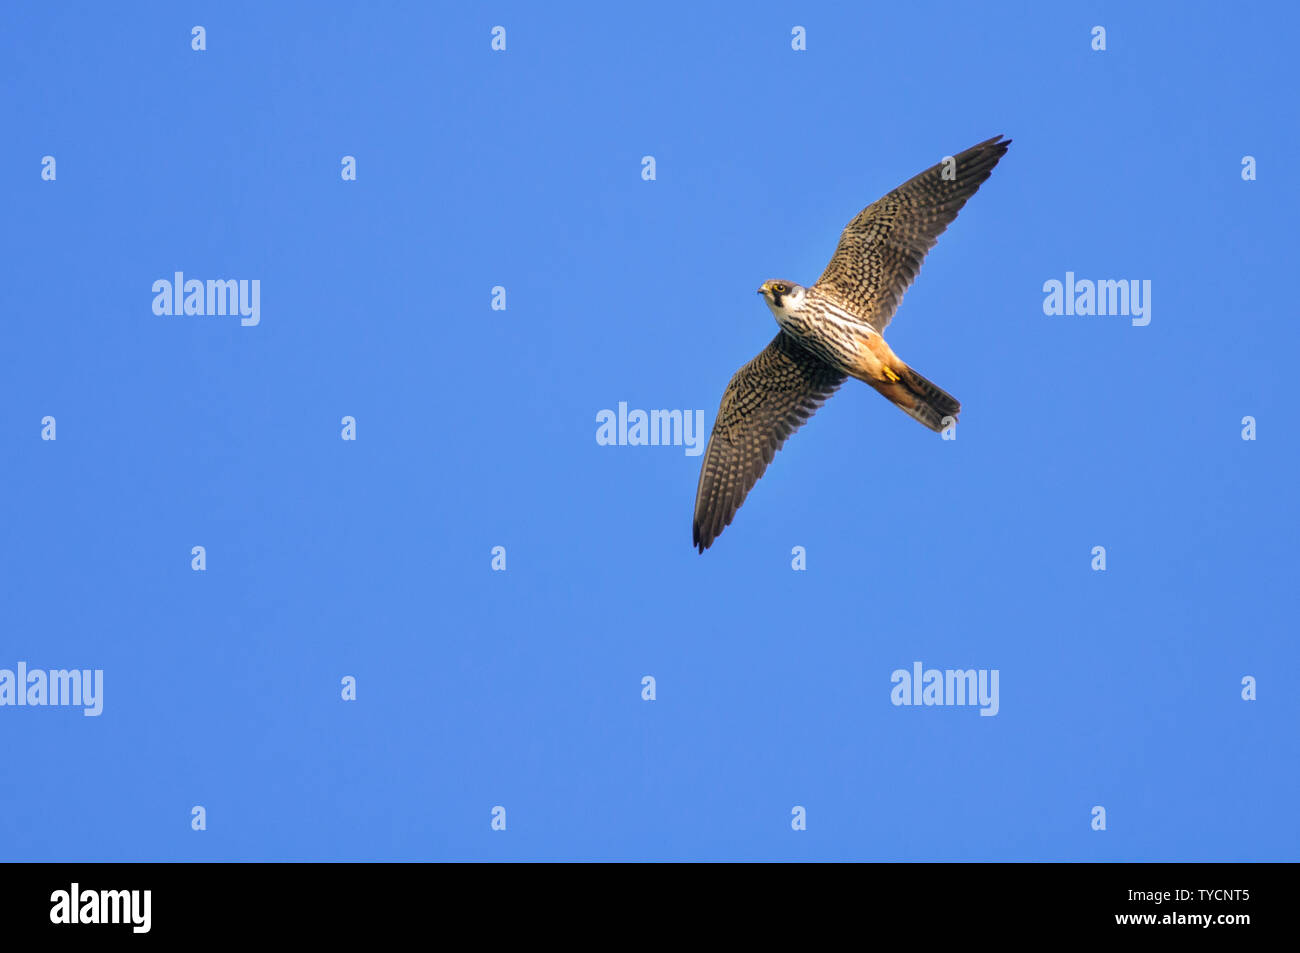 Hobby, Lower Saxony, Germany, Falco subbuteo Stock Photo